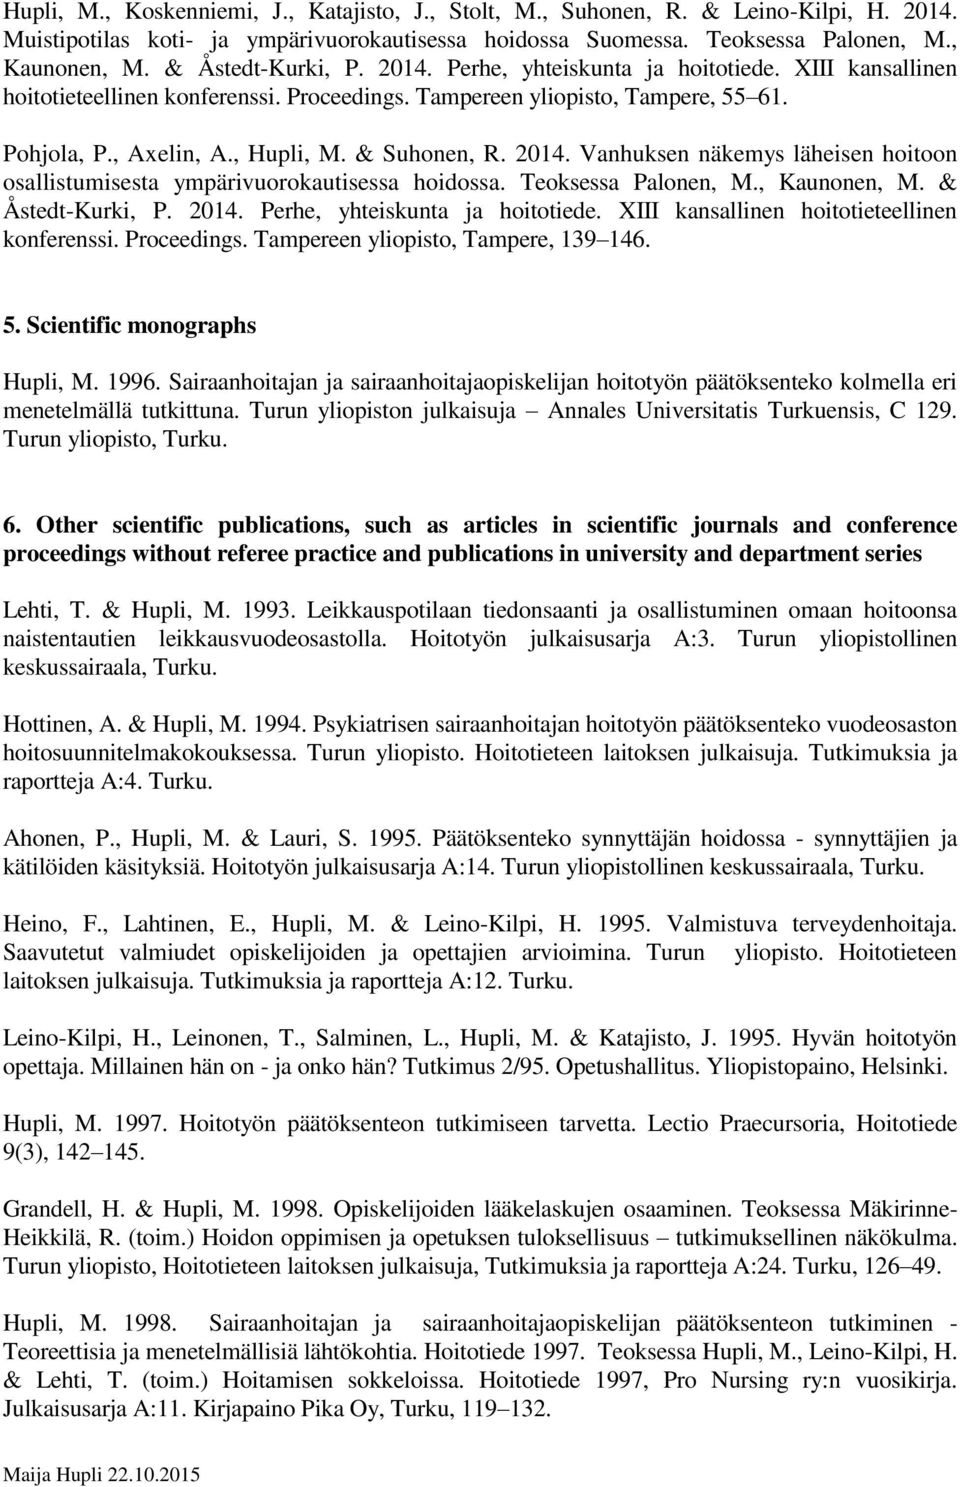 & Suhonen, R. 2014. Vanhuksen näkemys läheisen hoitoon osallistumisesta ympärivuorokautisessa hoidossa. Teoksessa Palonen, M., Kaunonen, M. & Åstedt-Kurki, P. 2014. Perhe, yhteiskunta ja hoitotiede.